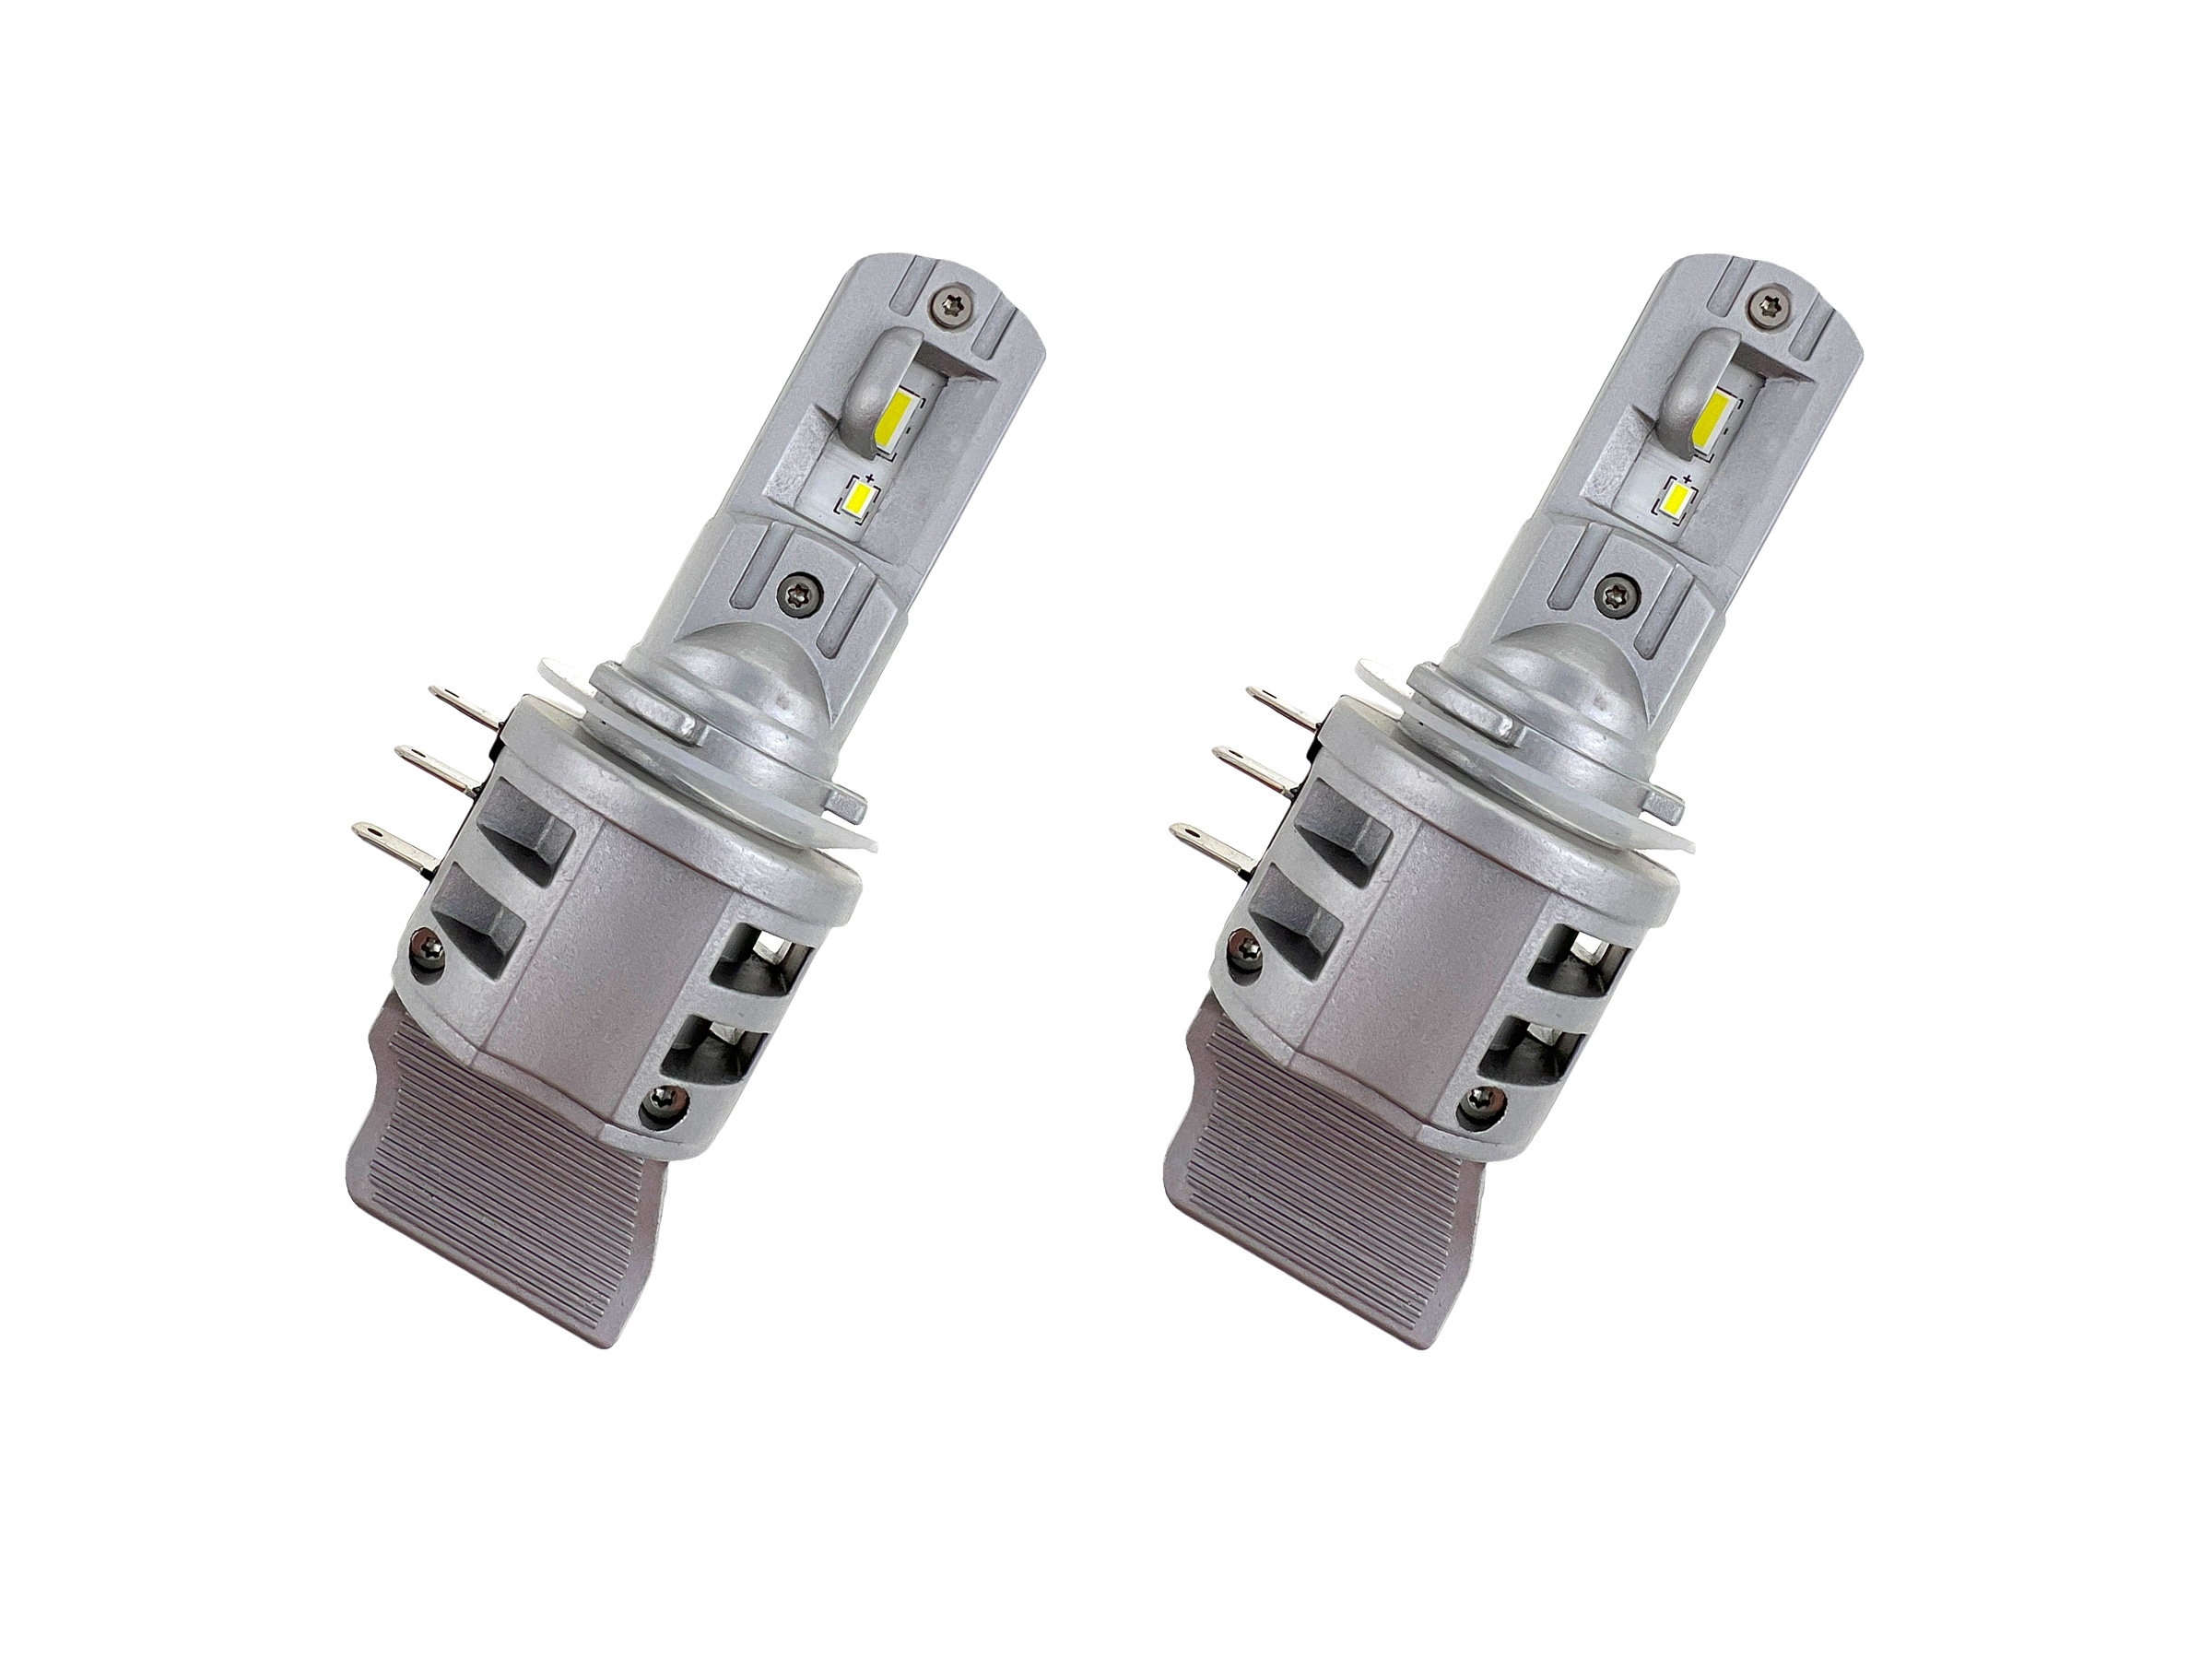 Lampen H15 LED Flex Cooling für Tagfahrlicht und Fernlicht.